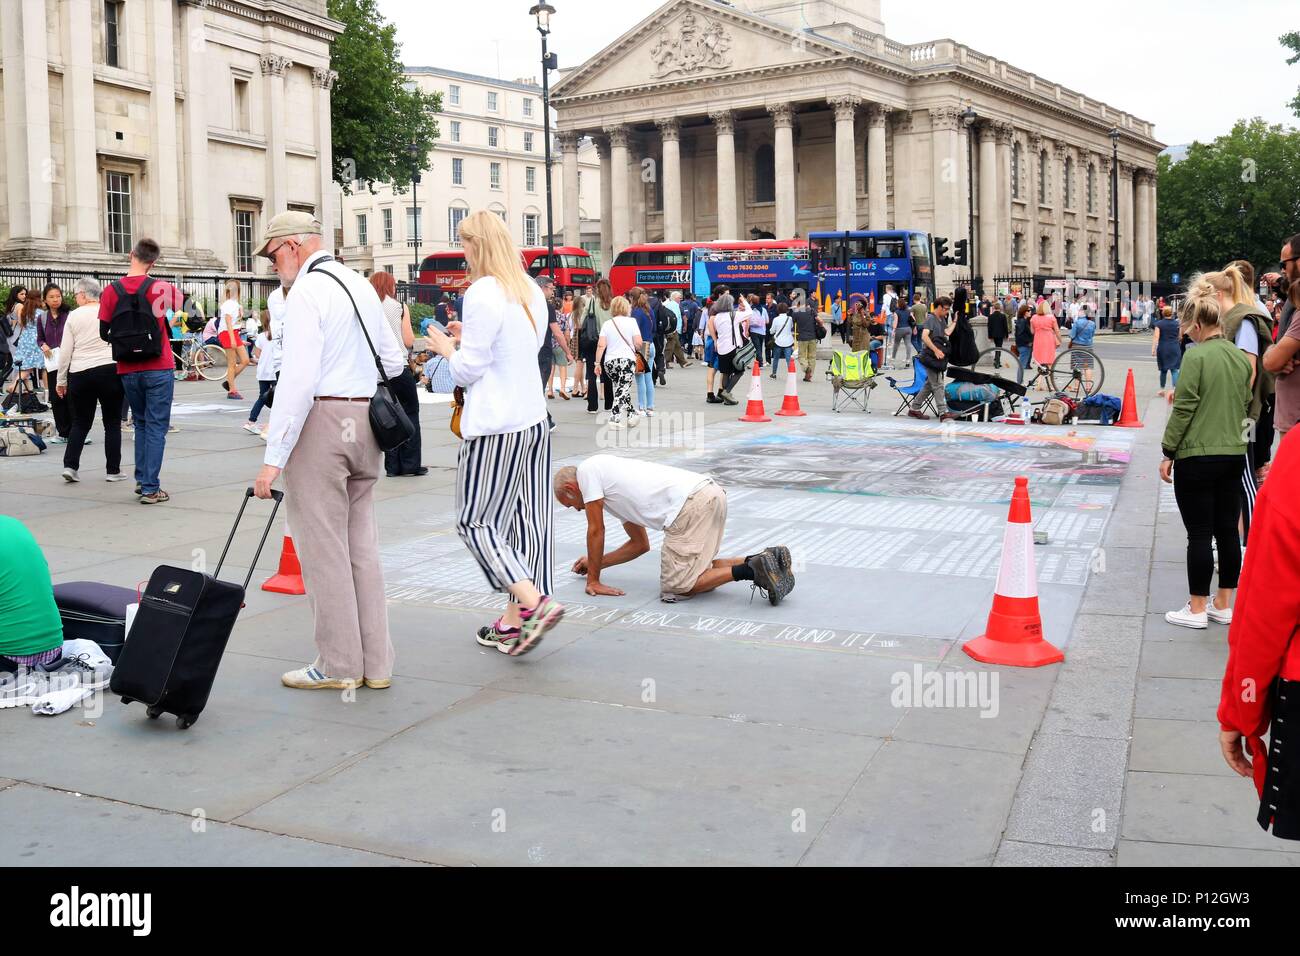 People enjoying the sunny weather at Trafalgar Square, London, UK Stock Photo